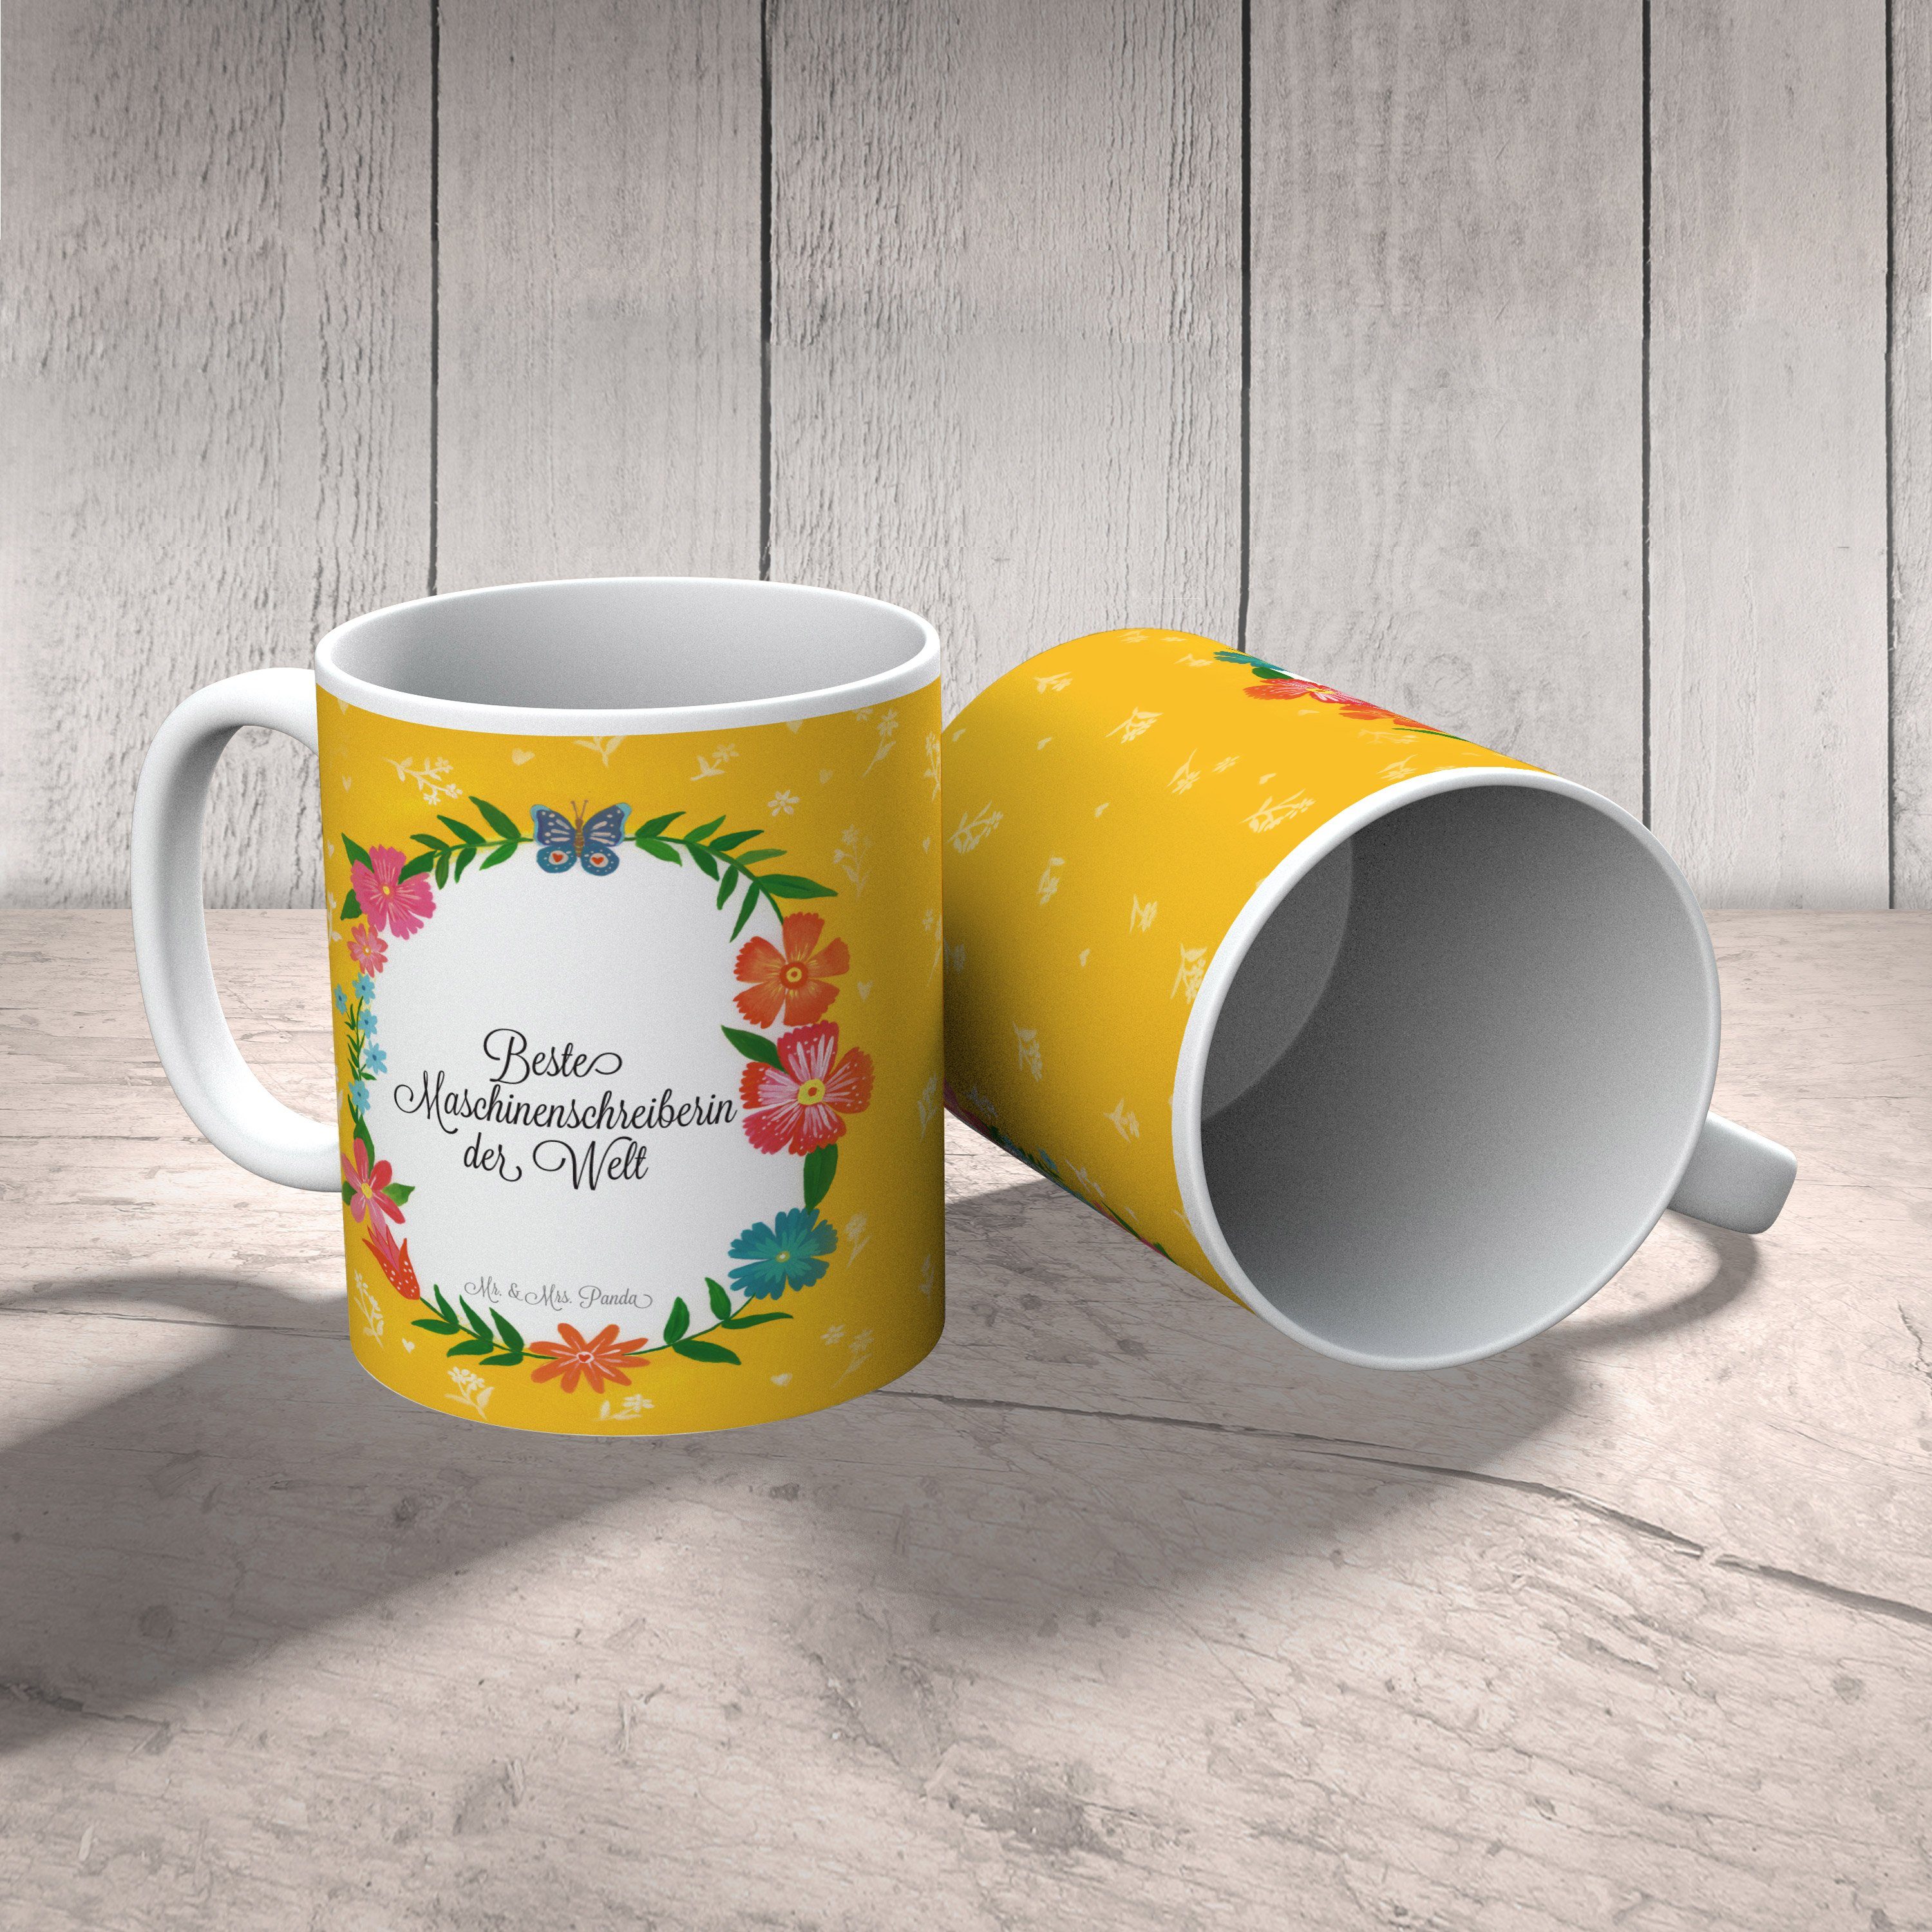 Mr. & Mrs. Panda Geschenk, Geschenk, Tasse Keramik Tasse, - Tasse Büro Maschinenschreiberin Sprüche